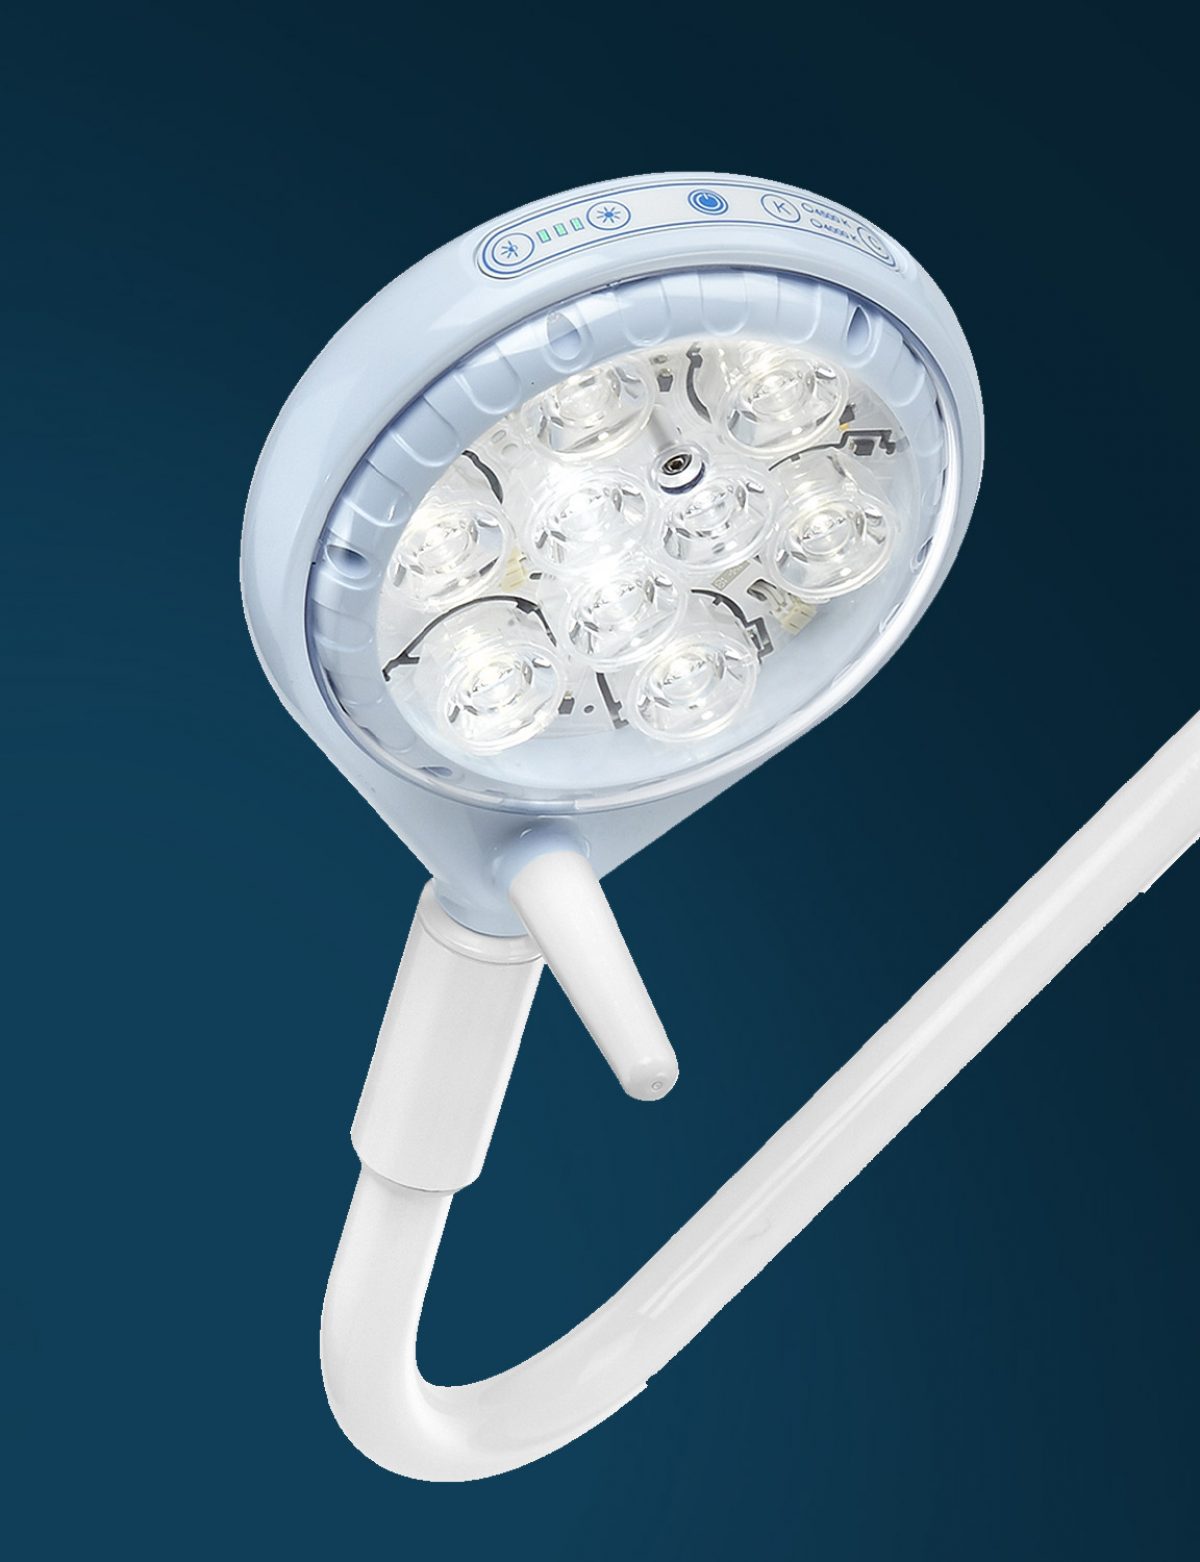 La lampada operatoria Saturno-led, che non genera ombre, è adatta per piccoli interventi chirurgici di superficie, ginecologia e primo soccorso. 